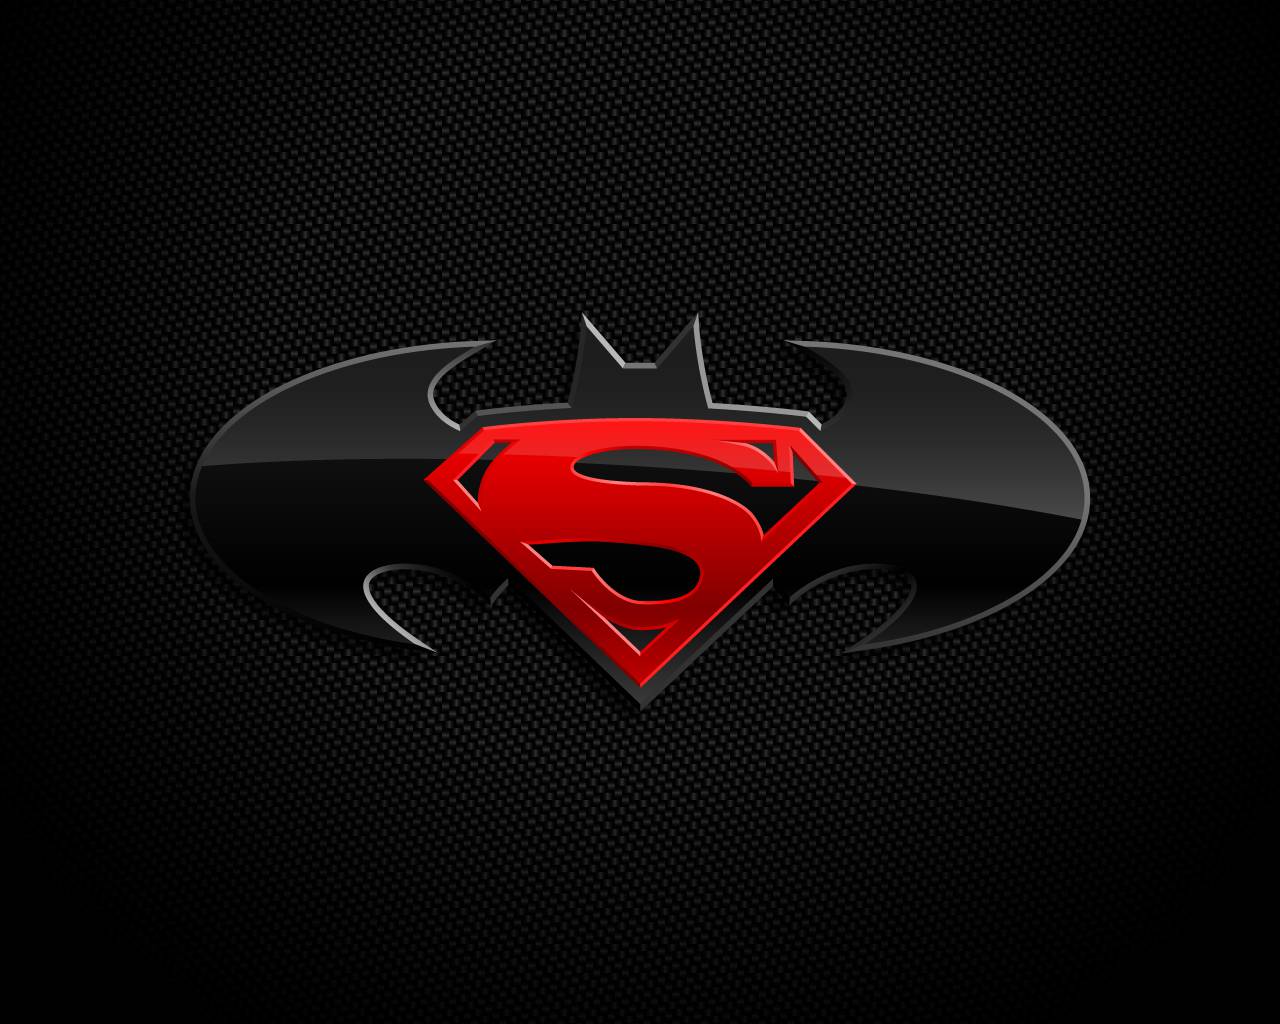 Batman logo dc comics superman wallpaper - - High Quality